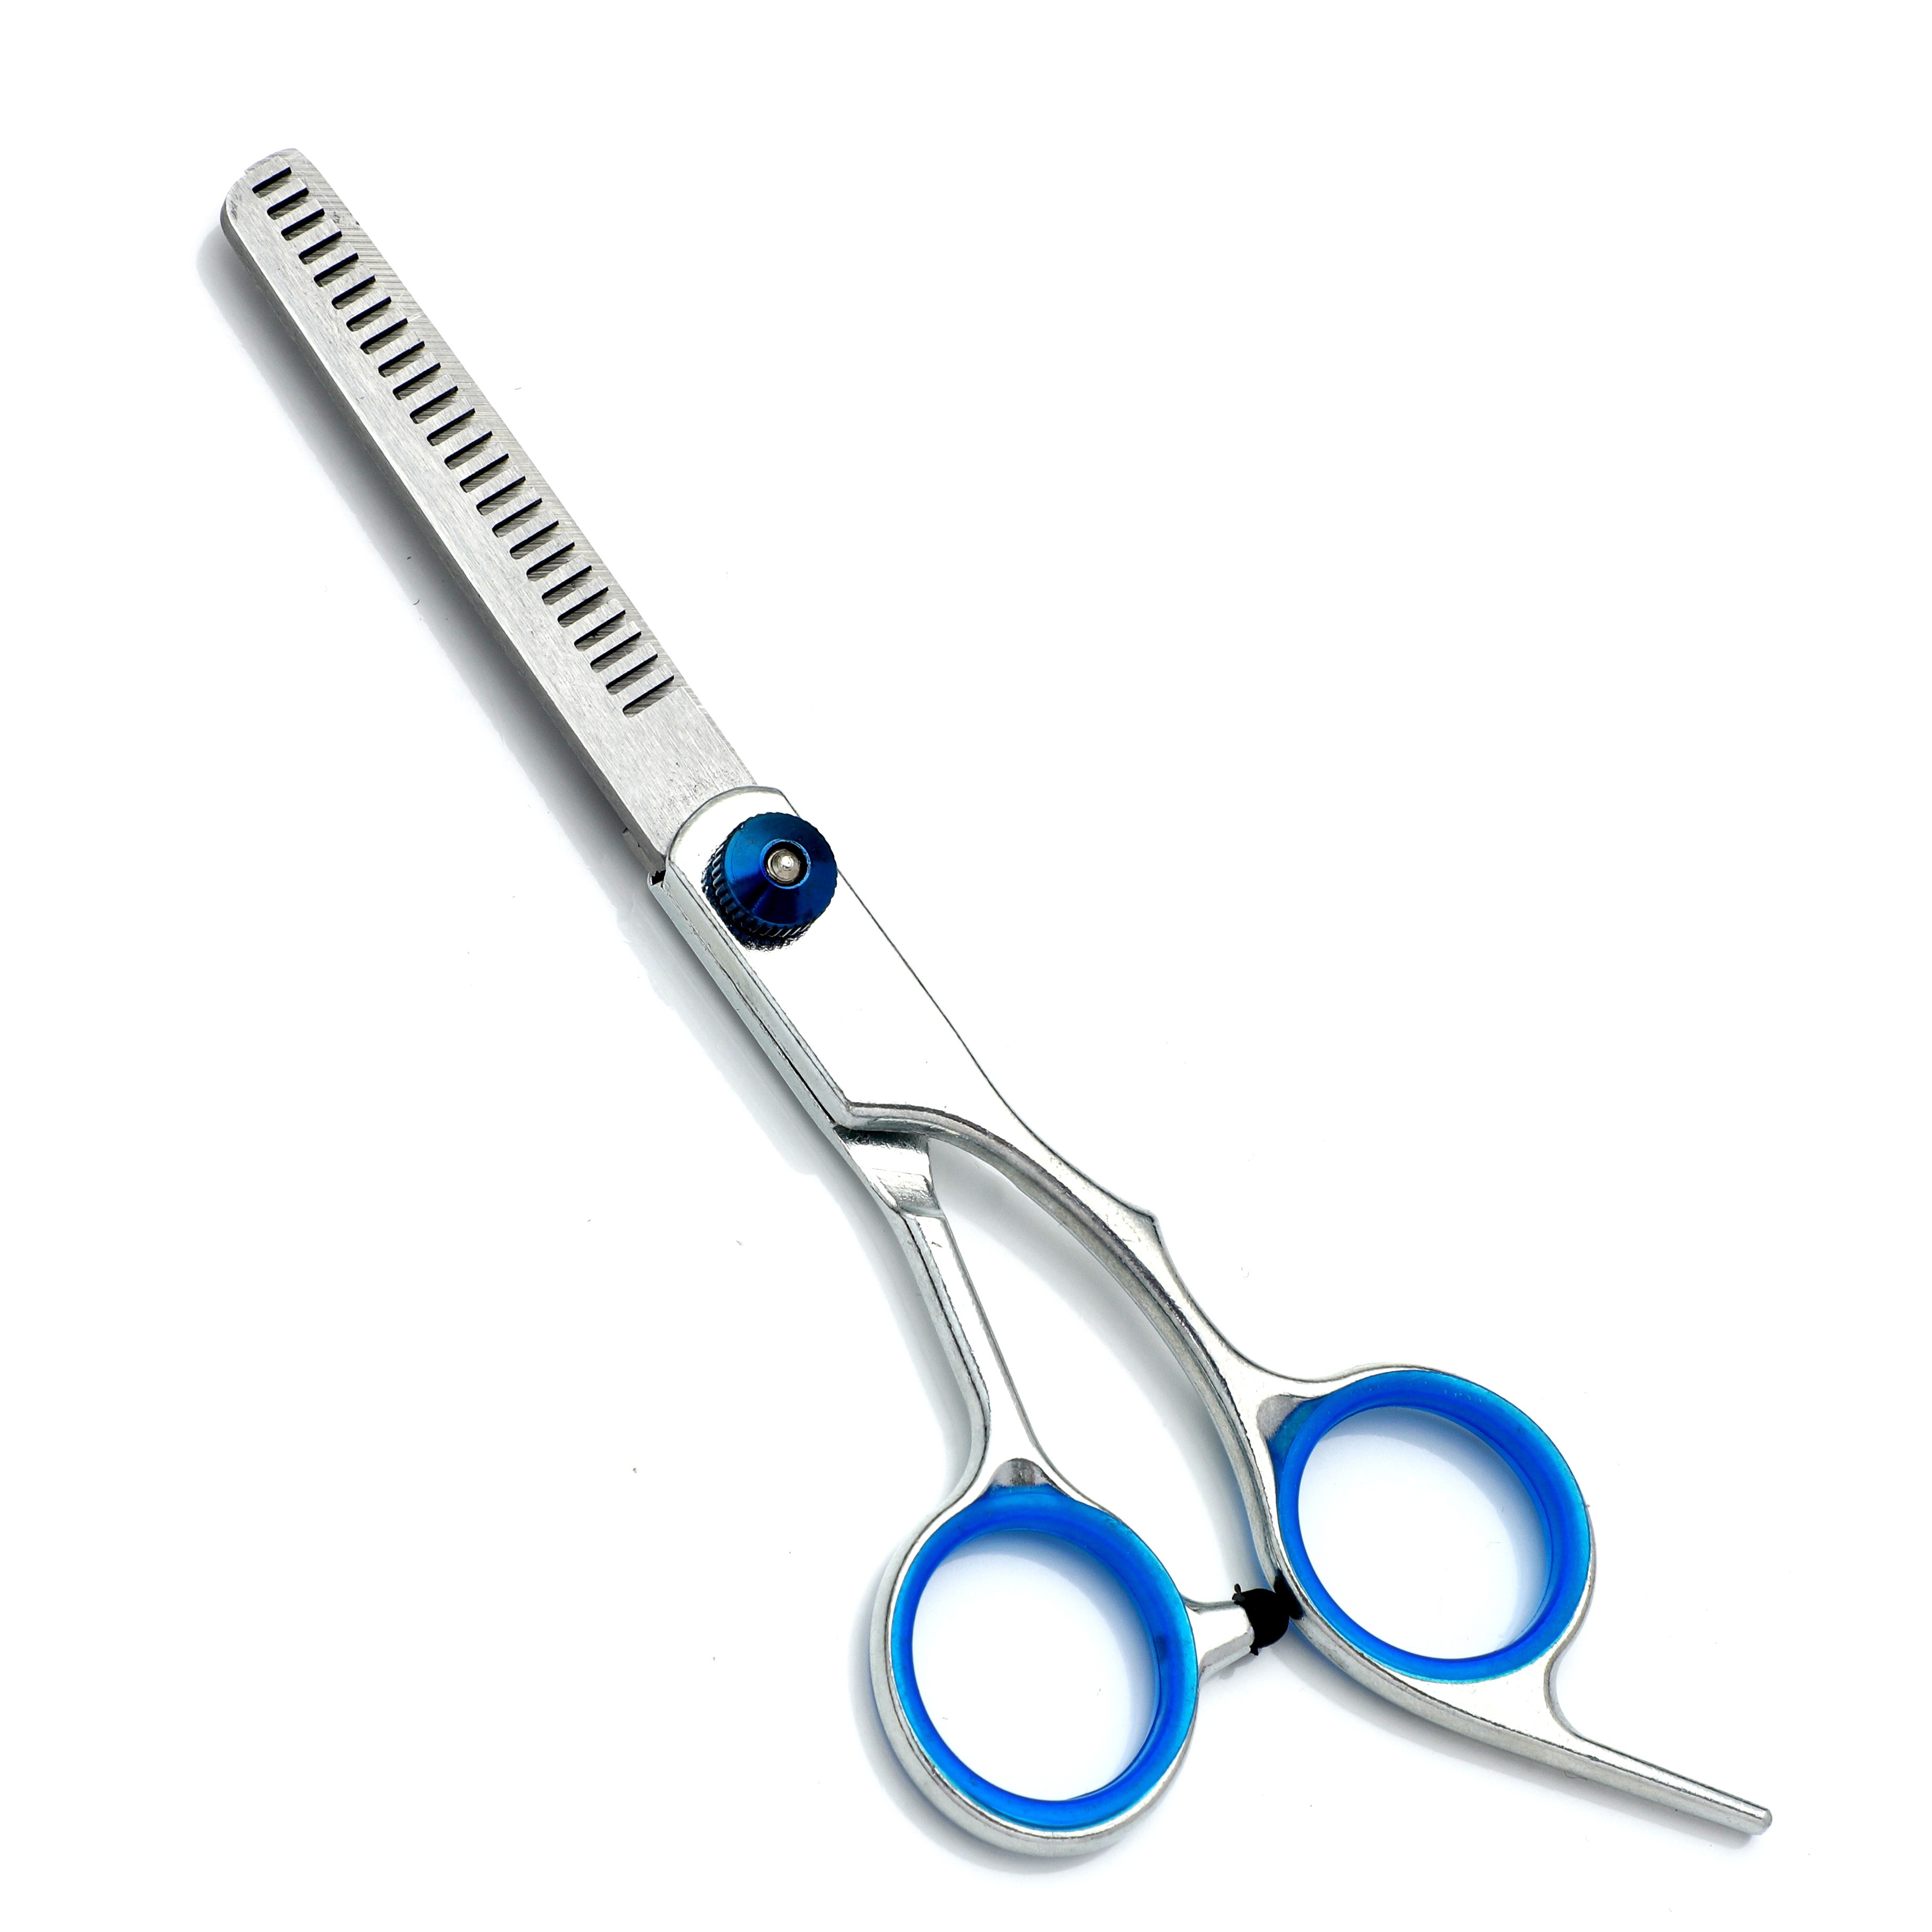 Barber Shears - Hair Scissors, 6 Professional Hair Cutting